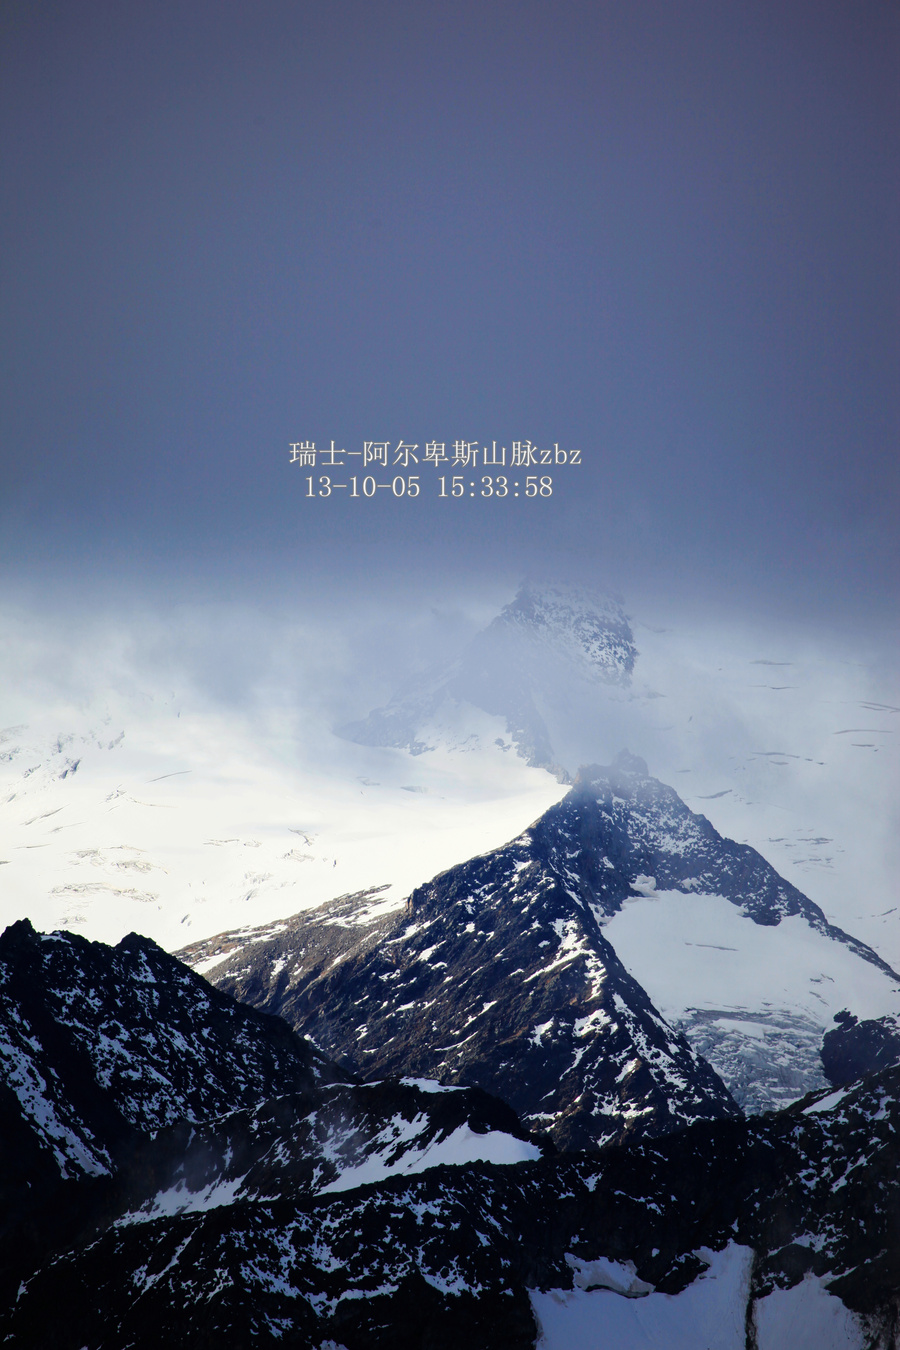 【瑞士掠影-铁力士雪山摄影图片】铁力士雪山